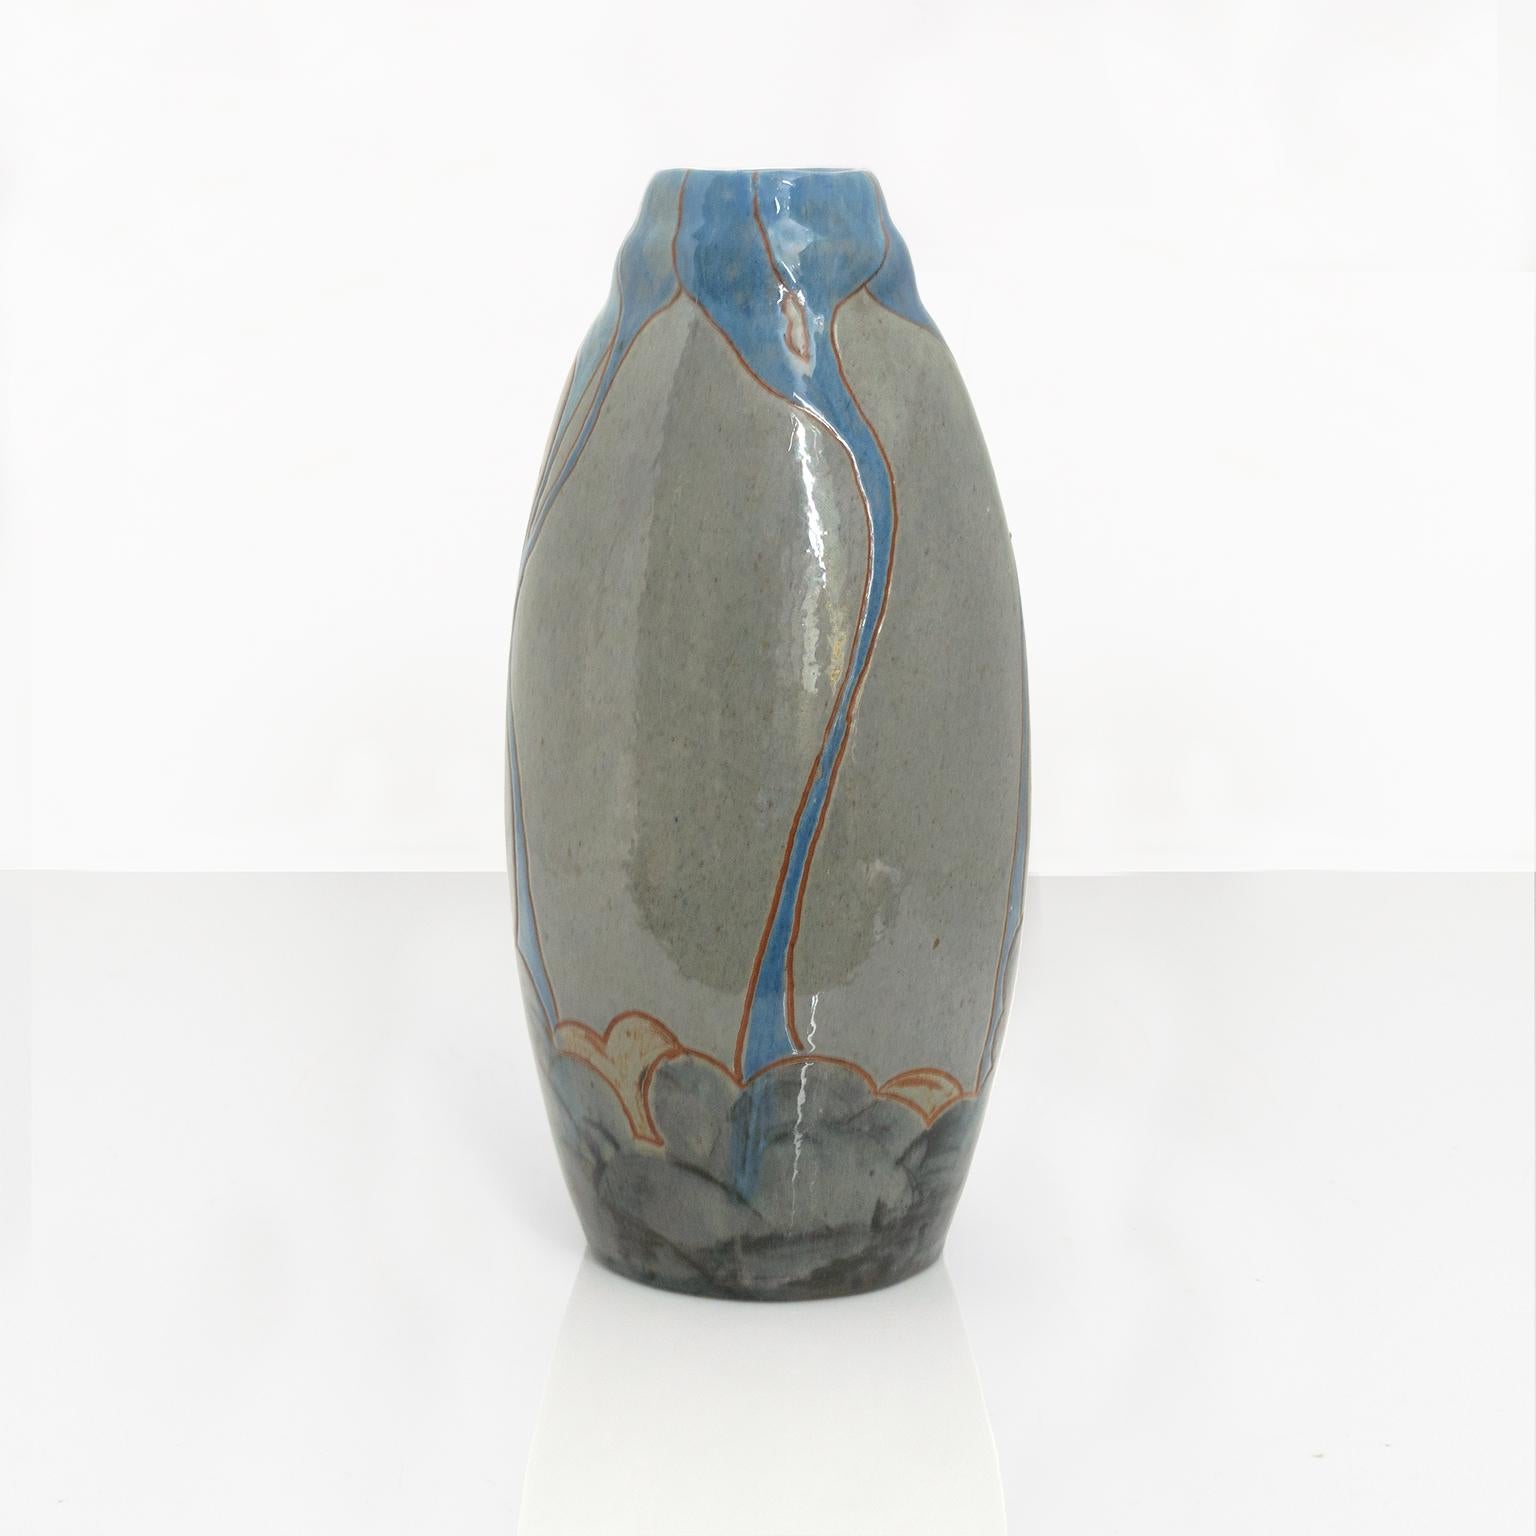 Un vase suédois Art Nouveau en céramique de forme organique avec des lignes langoureuses en glaçure bleue sur un corps gris neutre. Fabriqué par John Andersson pour Hogans, vers 1910. Signé en bas. 

Mesures : hauteur : 10,5